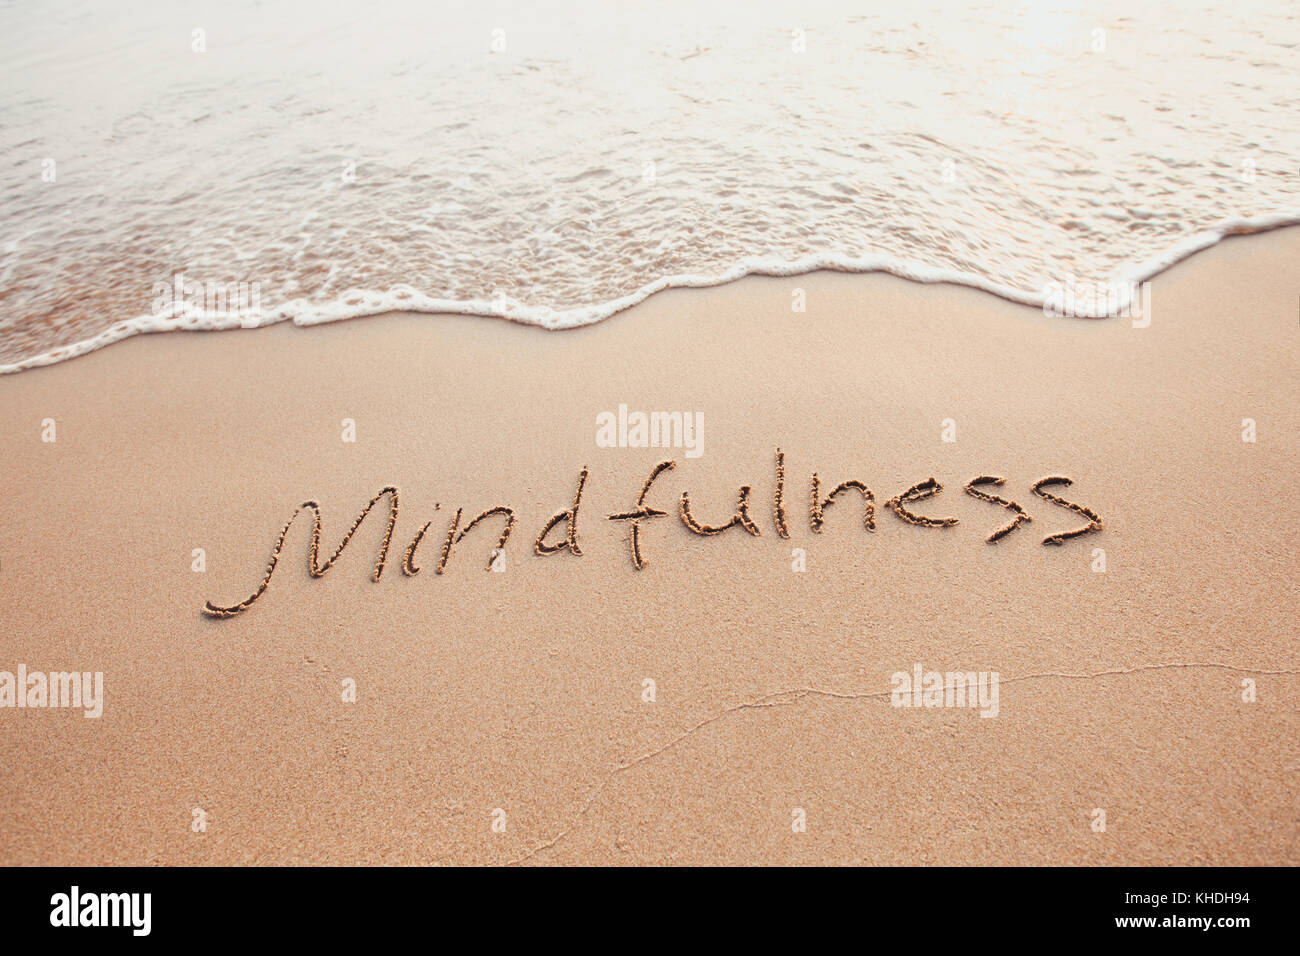 Concept de mindfulness, conscient vivant, du texte écrit sur le sable de plage Banque D'Images